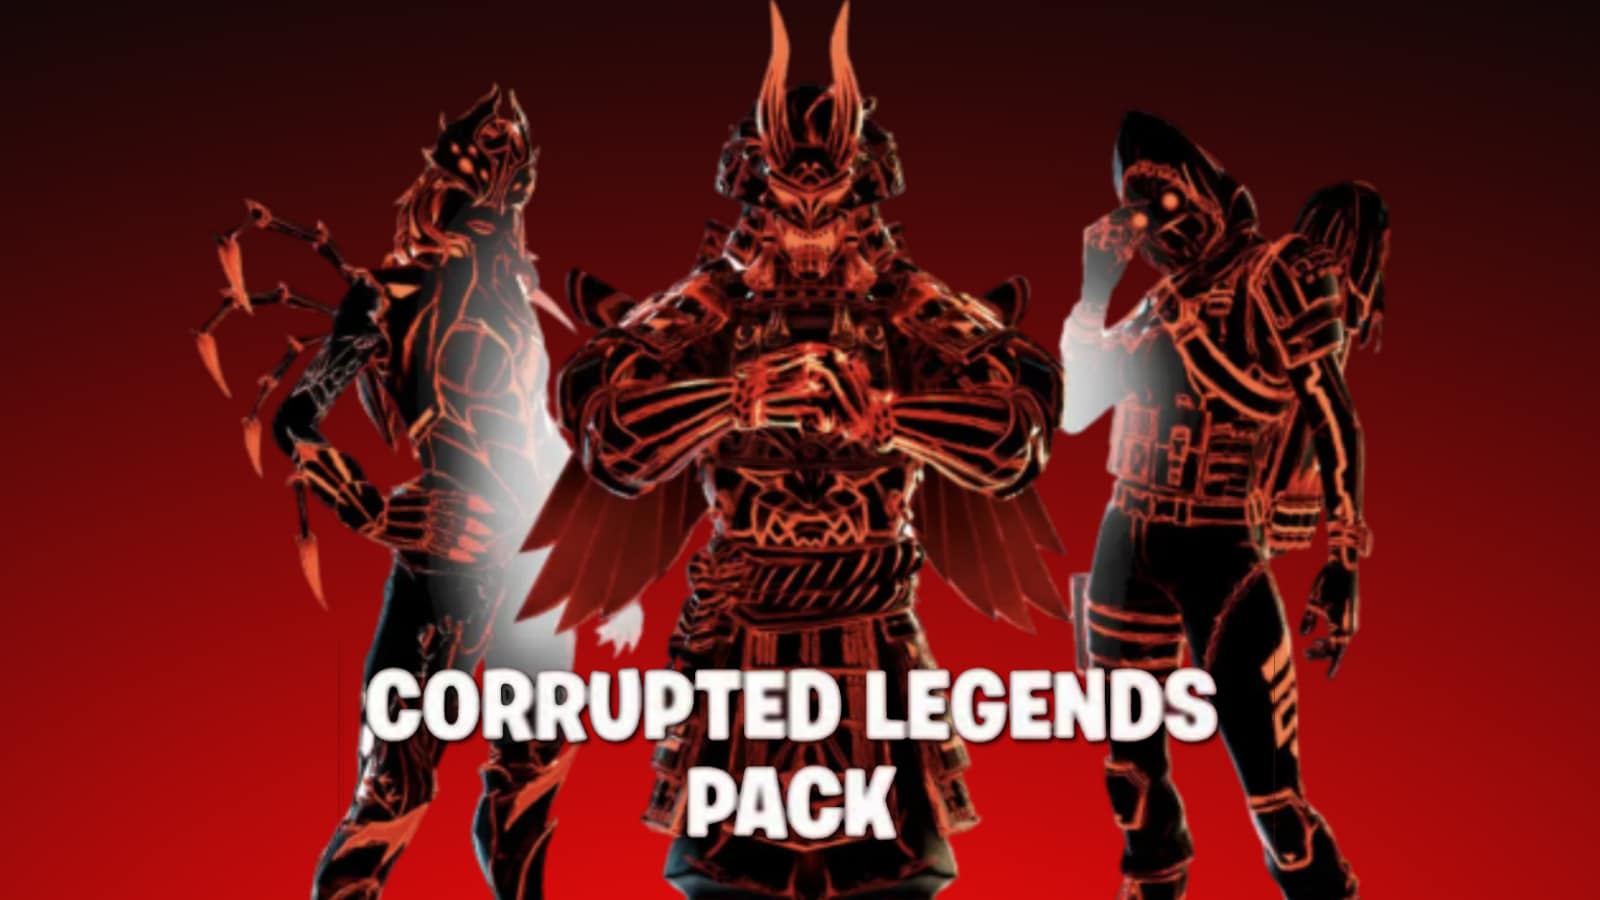 Fortnite Corrupted Legends pack leaked.